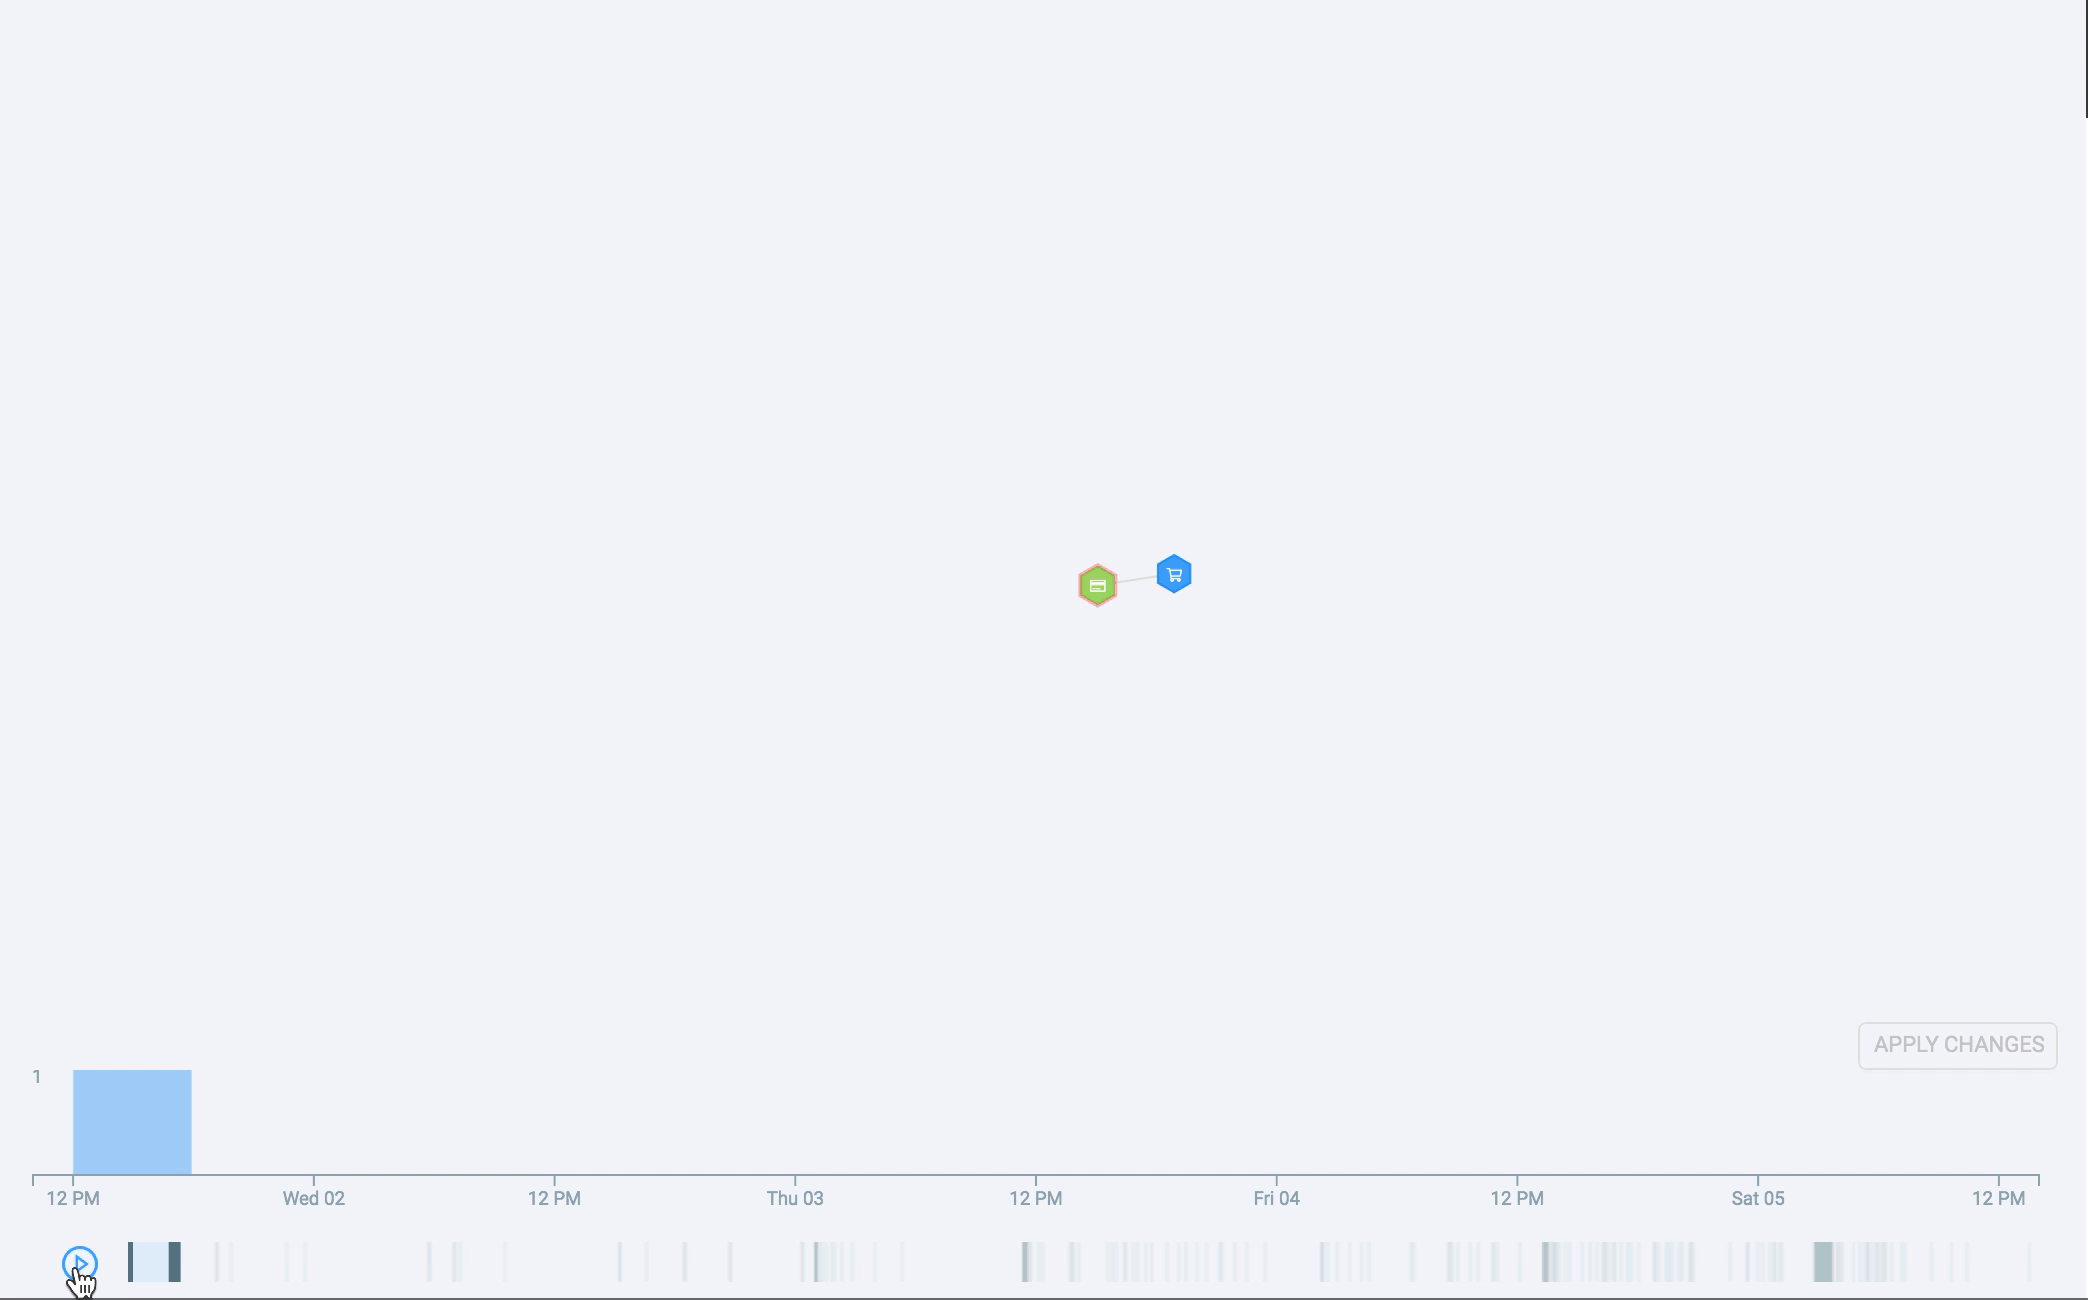 GIF mostrando um histograma temporal de cartões comprometidos após uma violação de dados